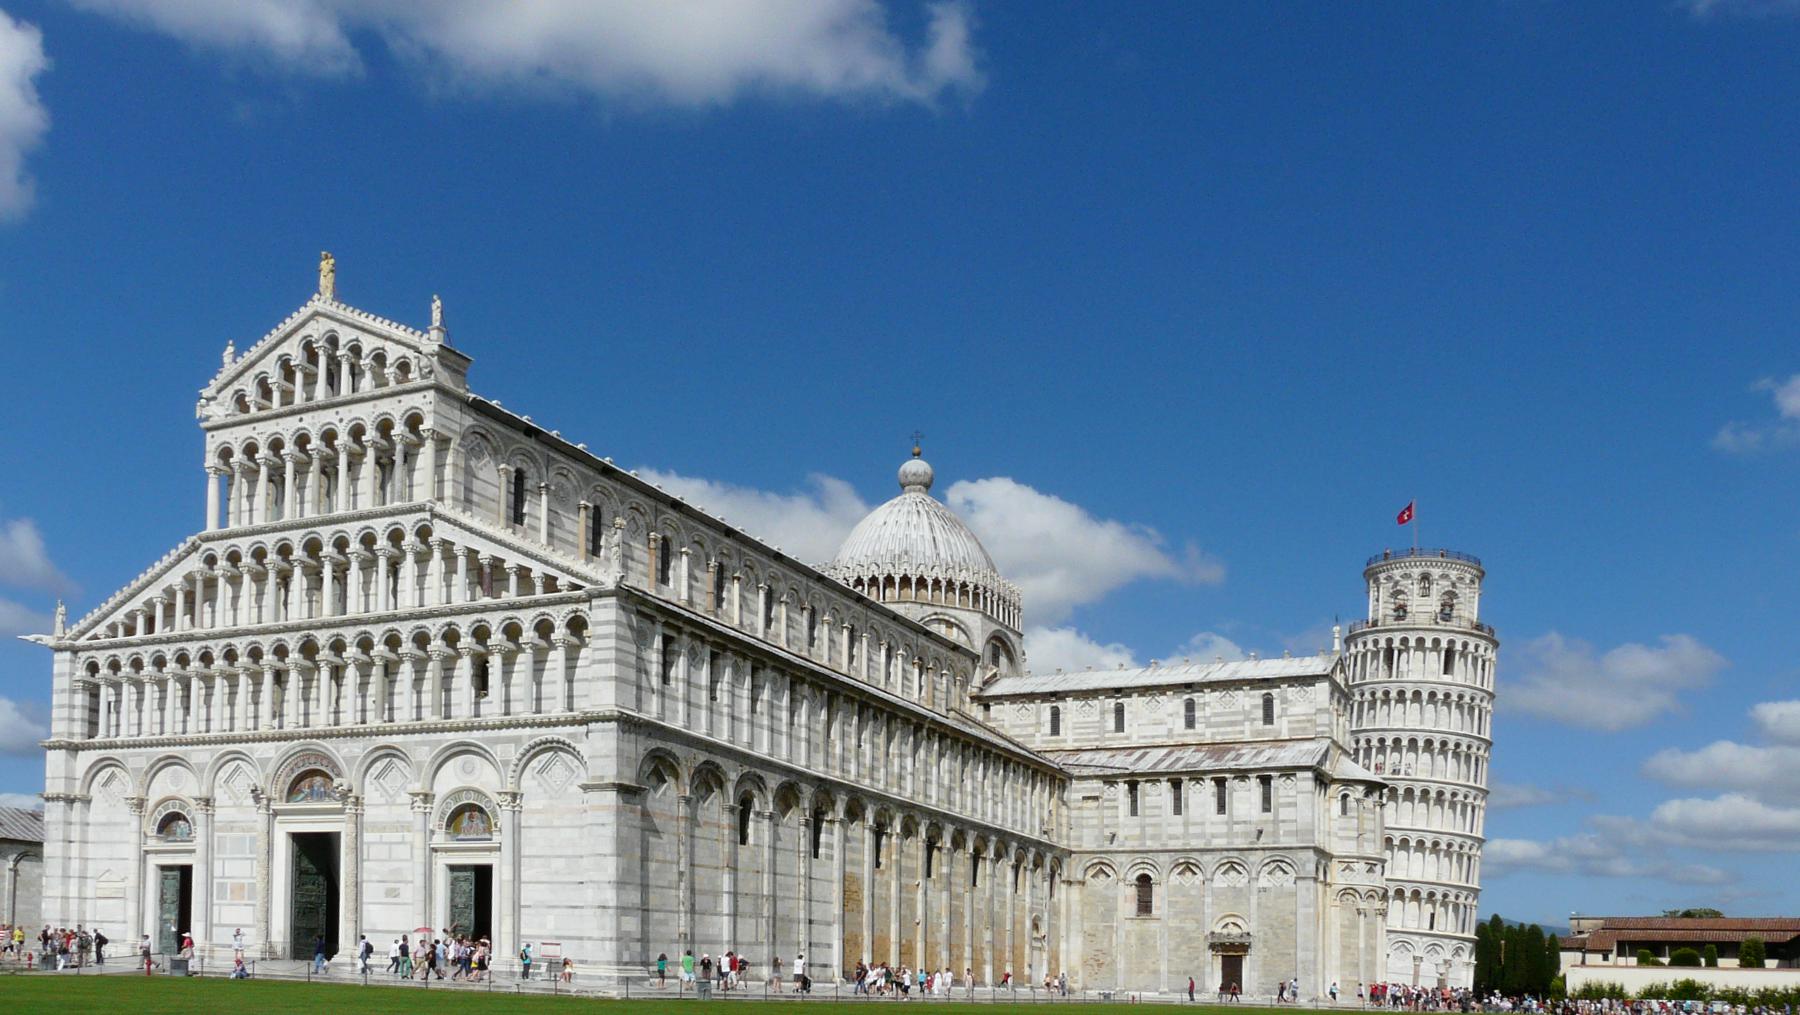 Der Dom von Pisa: Santa Maria Assunta